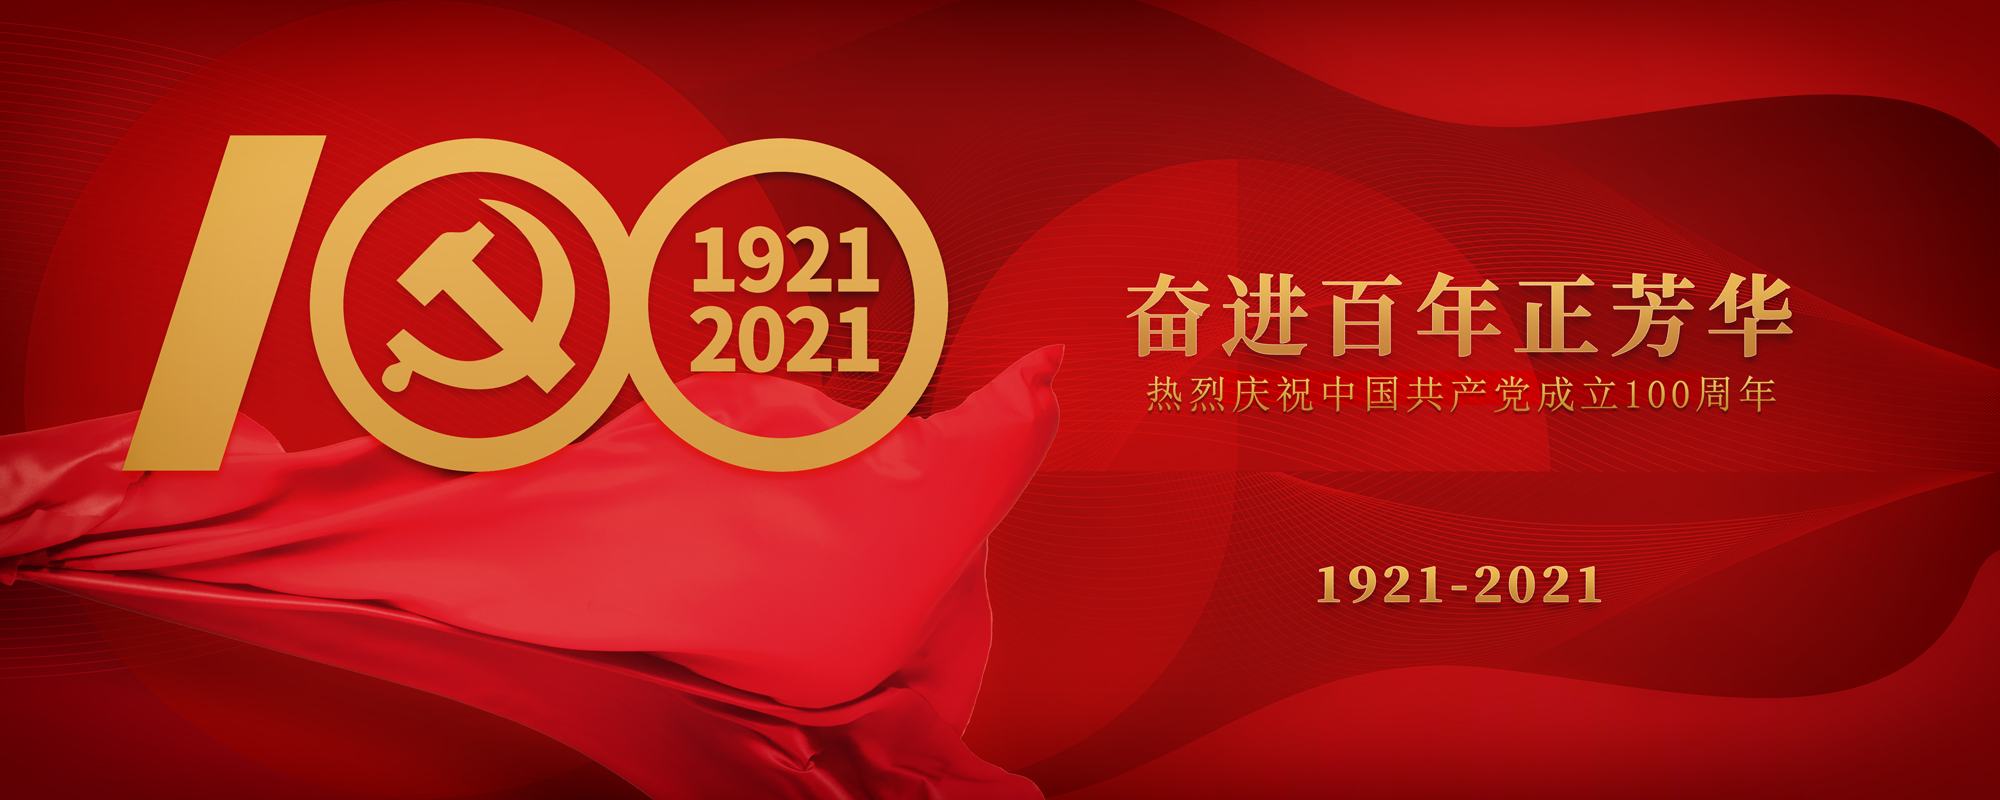 云联惠体育祝贺建党100周年